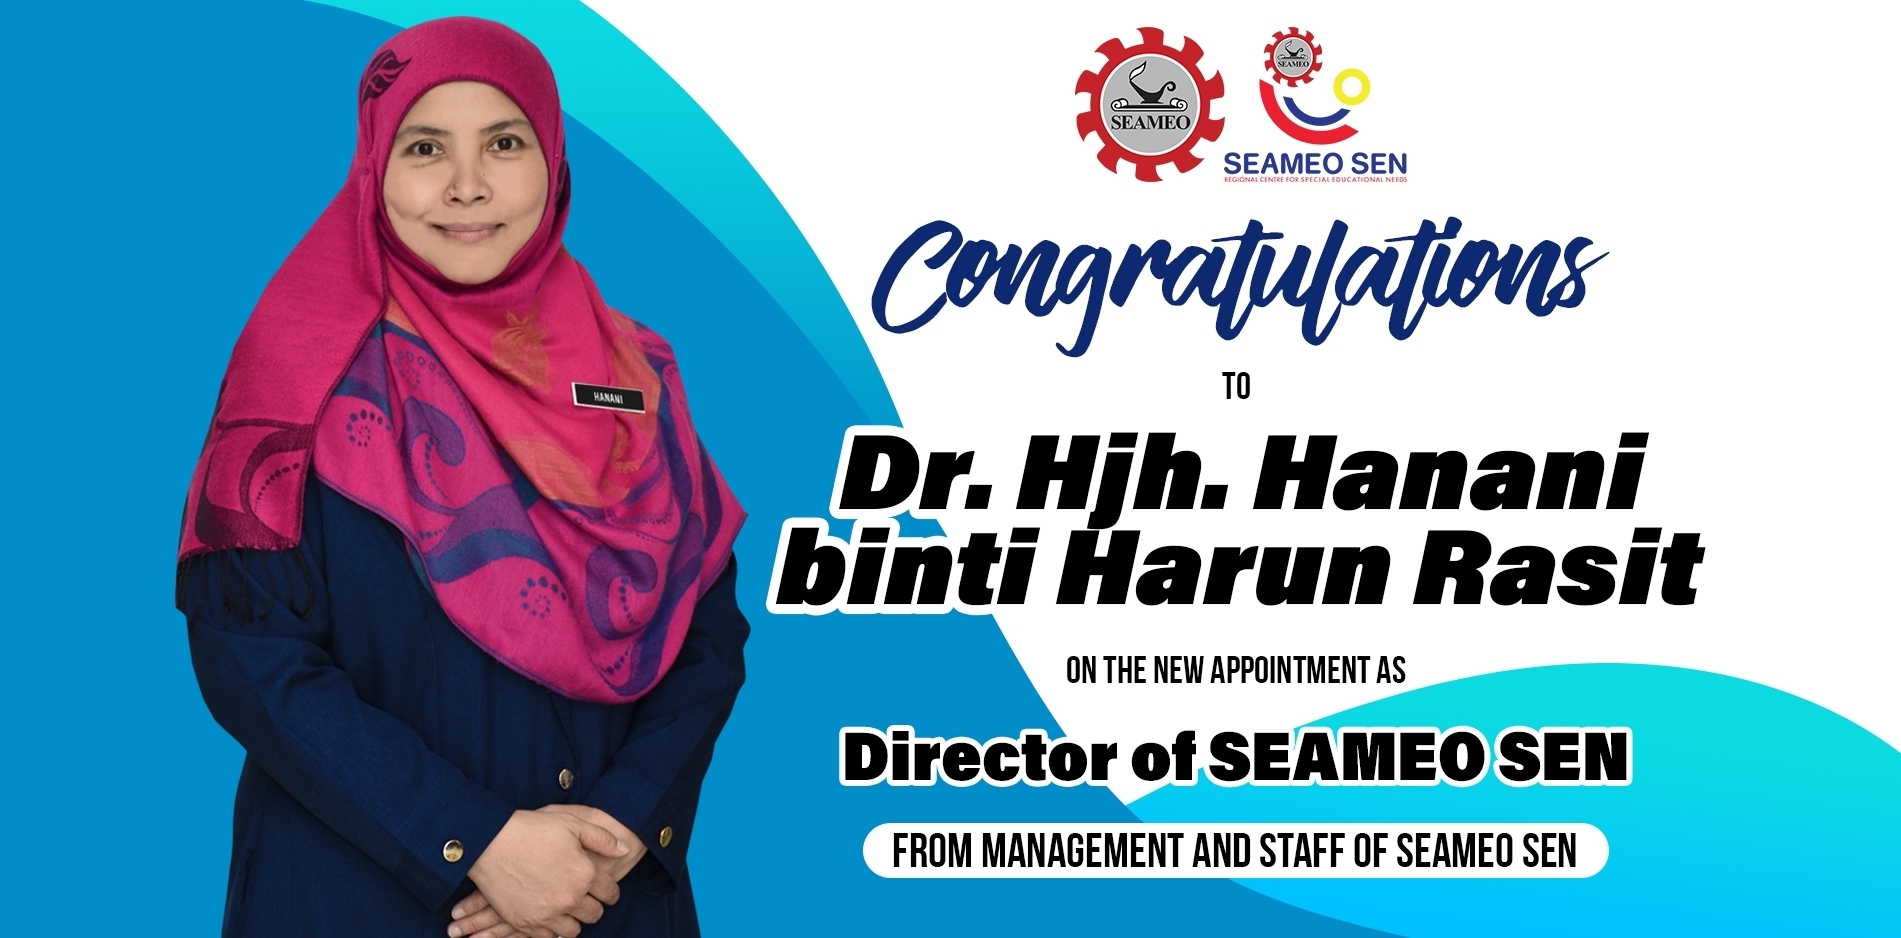 Welcome Dr. Hanani